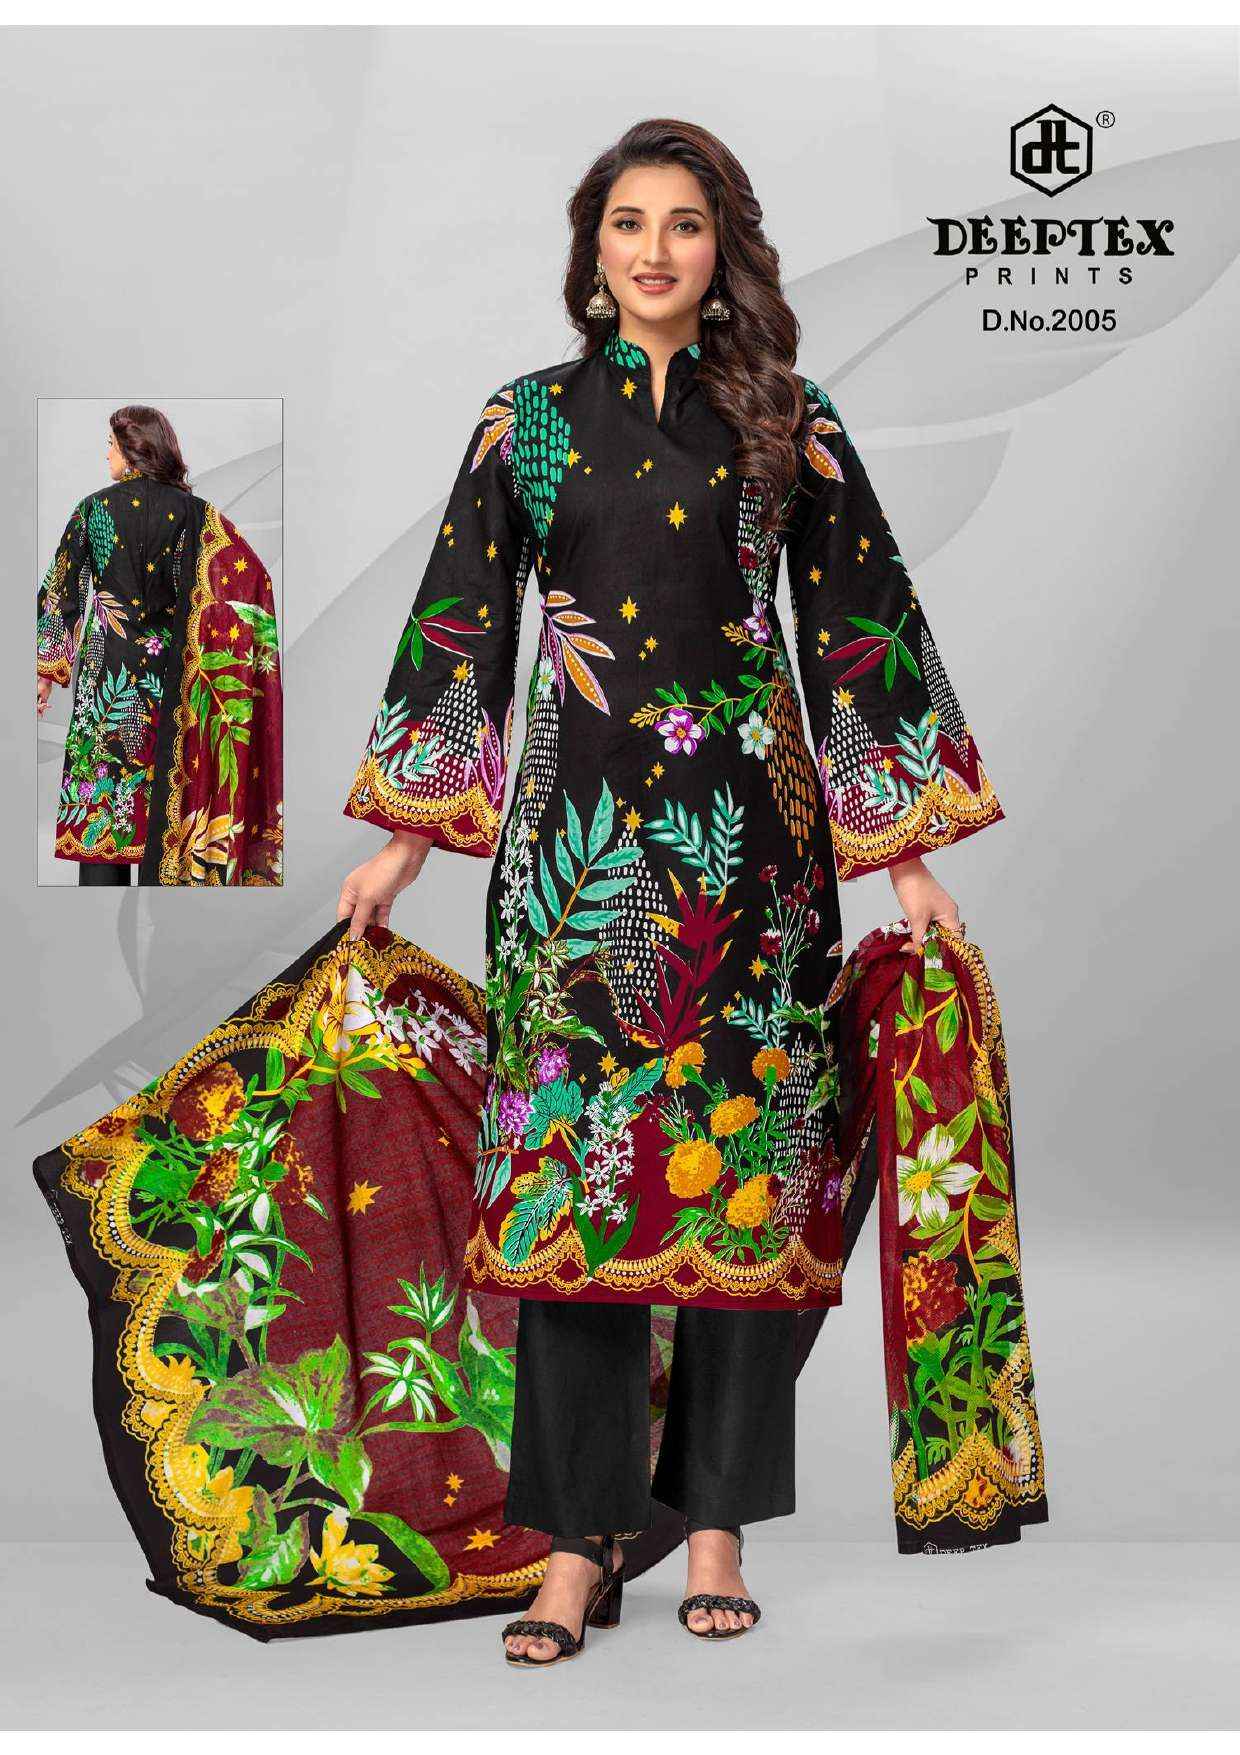 Deeptex Roohi Zara Vol 2 Lawn Cotton Dress Material 8 pcs Catalogue